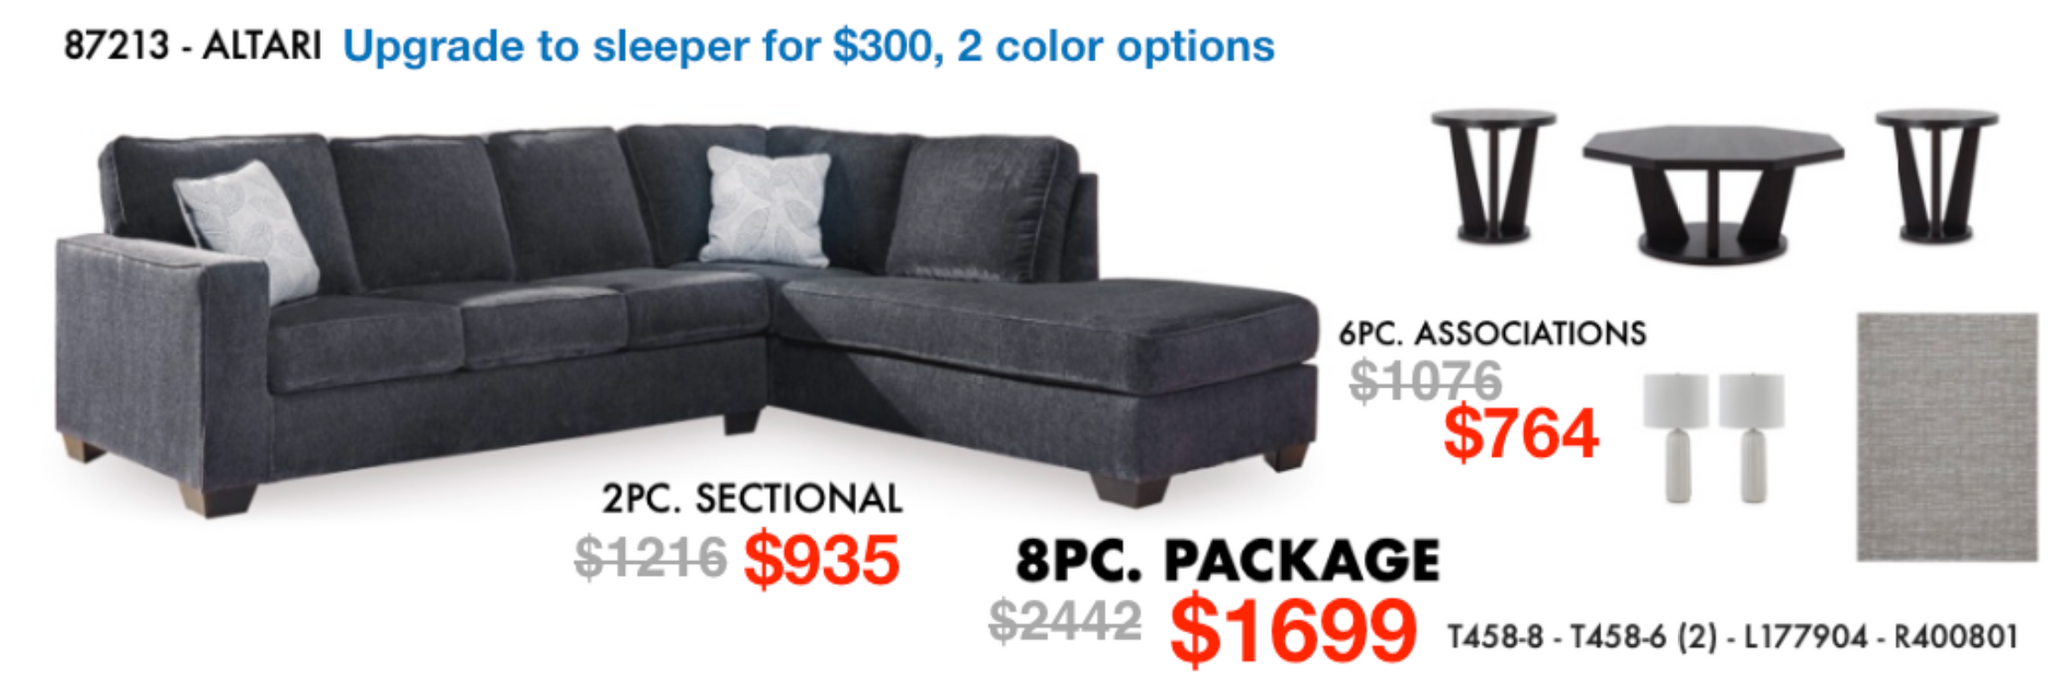 Altari Sectional Sofa/Couch Collection Living Room 8pc Set NEW AY-87213, AY-T458-8, AY-T458-6(2), AY-L177904, AY-R400801